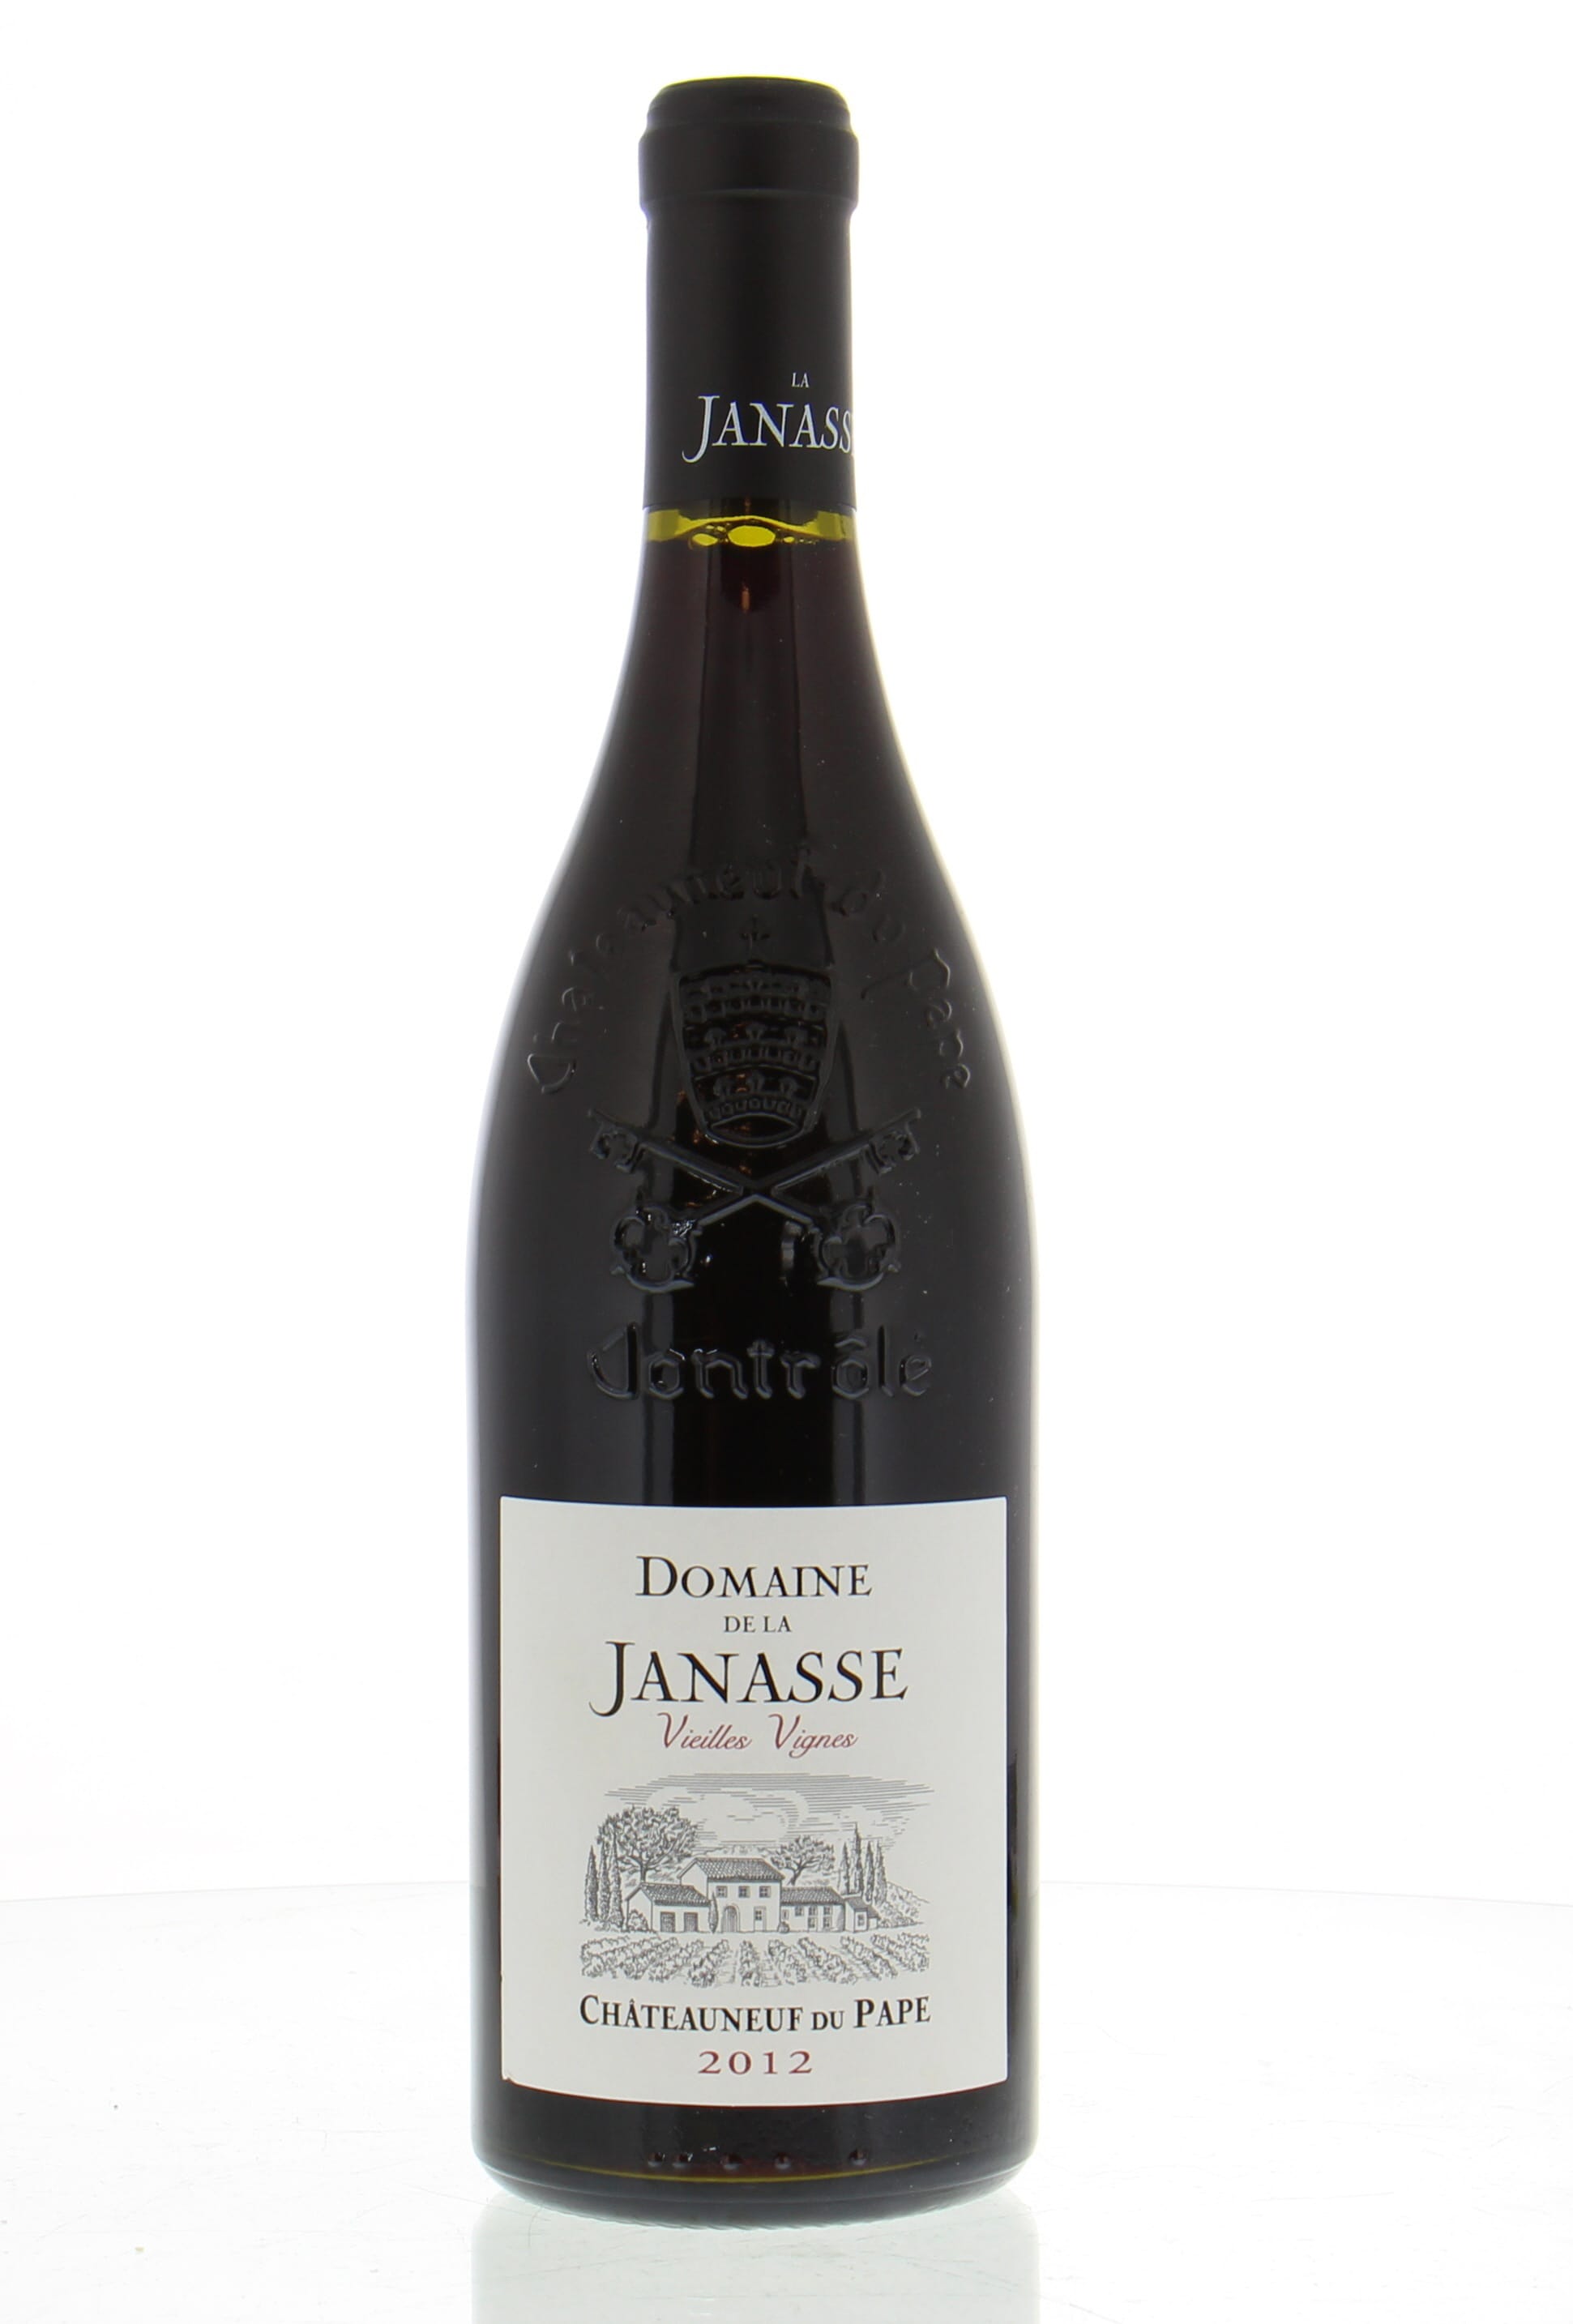 Domaine de la Janasse - Chateauneuf du Pape Cuvee Vieilles Vignes 2012 Perfect